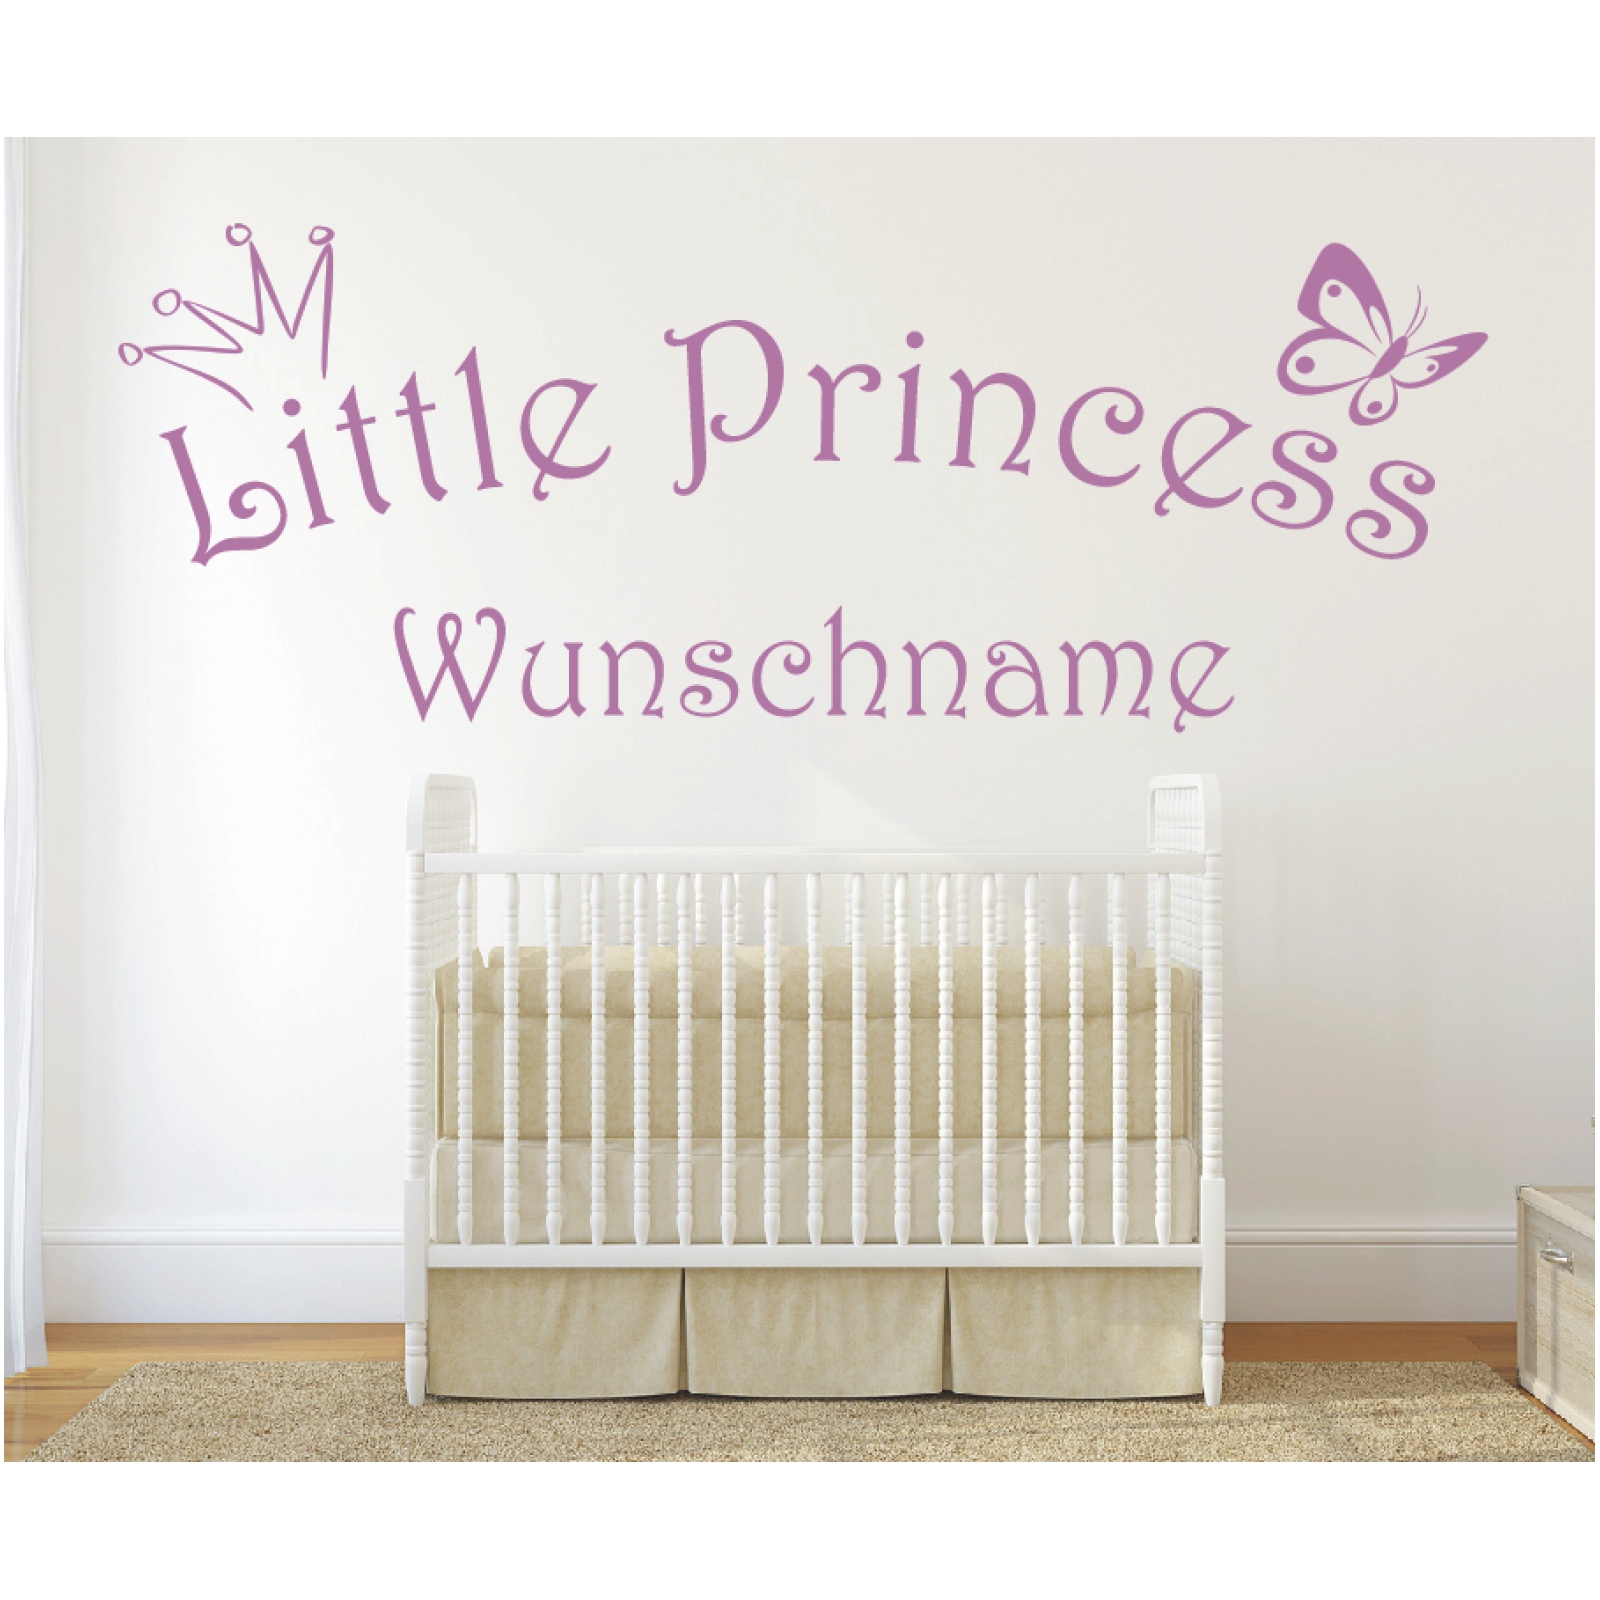 Wandtattoo Little Princess Kinderzimmer Wunschname Wunschtext Wandaufkleber 15